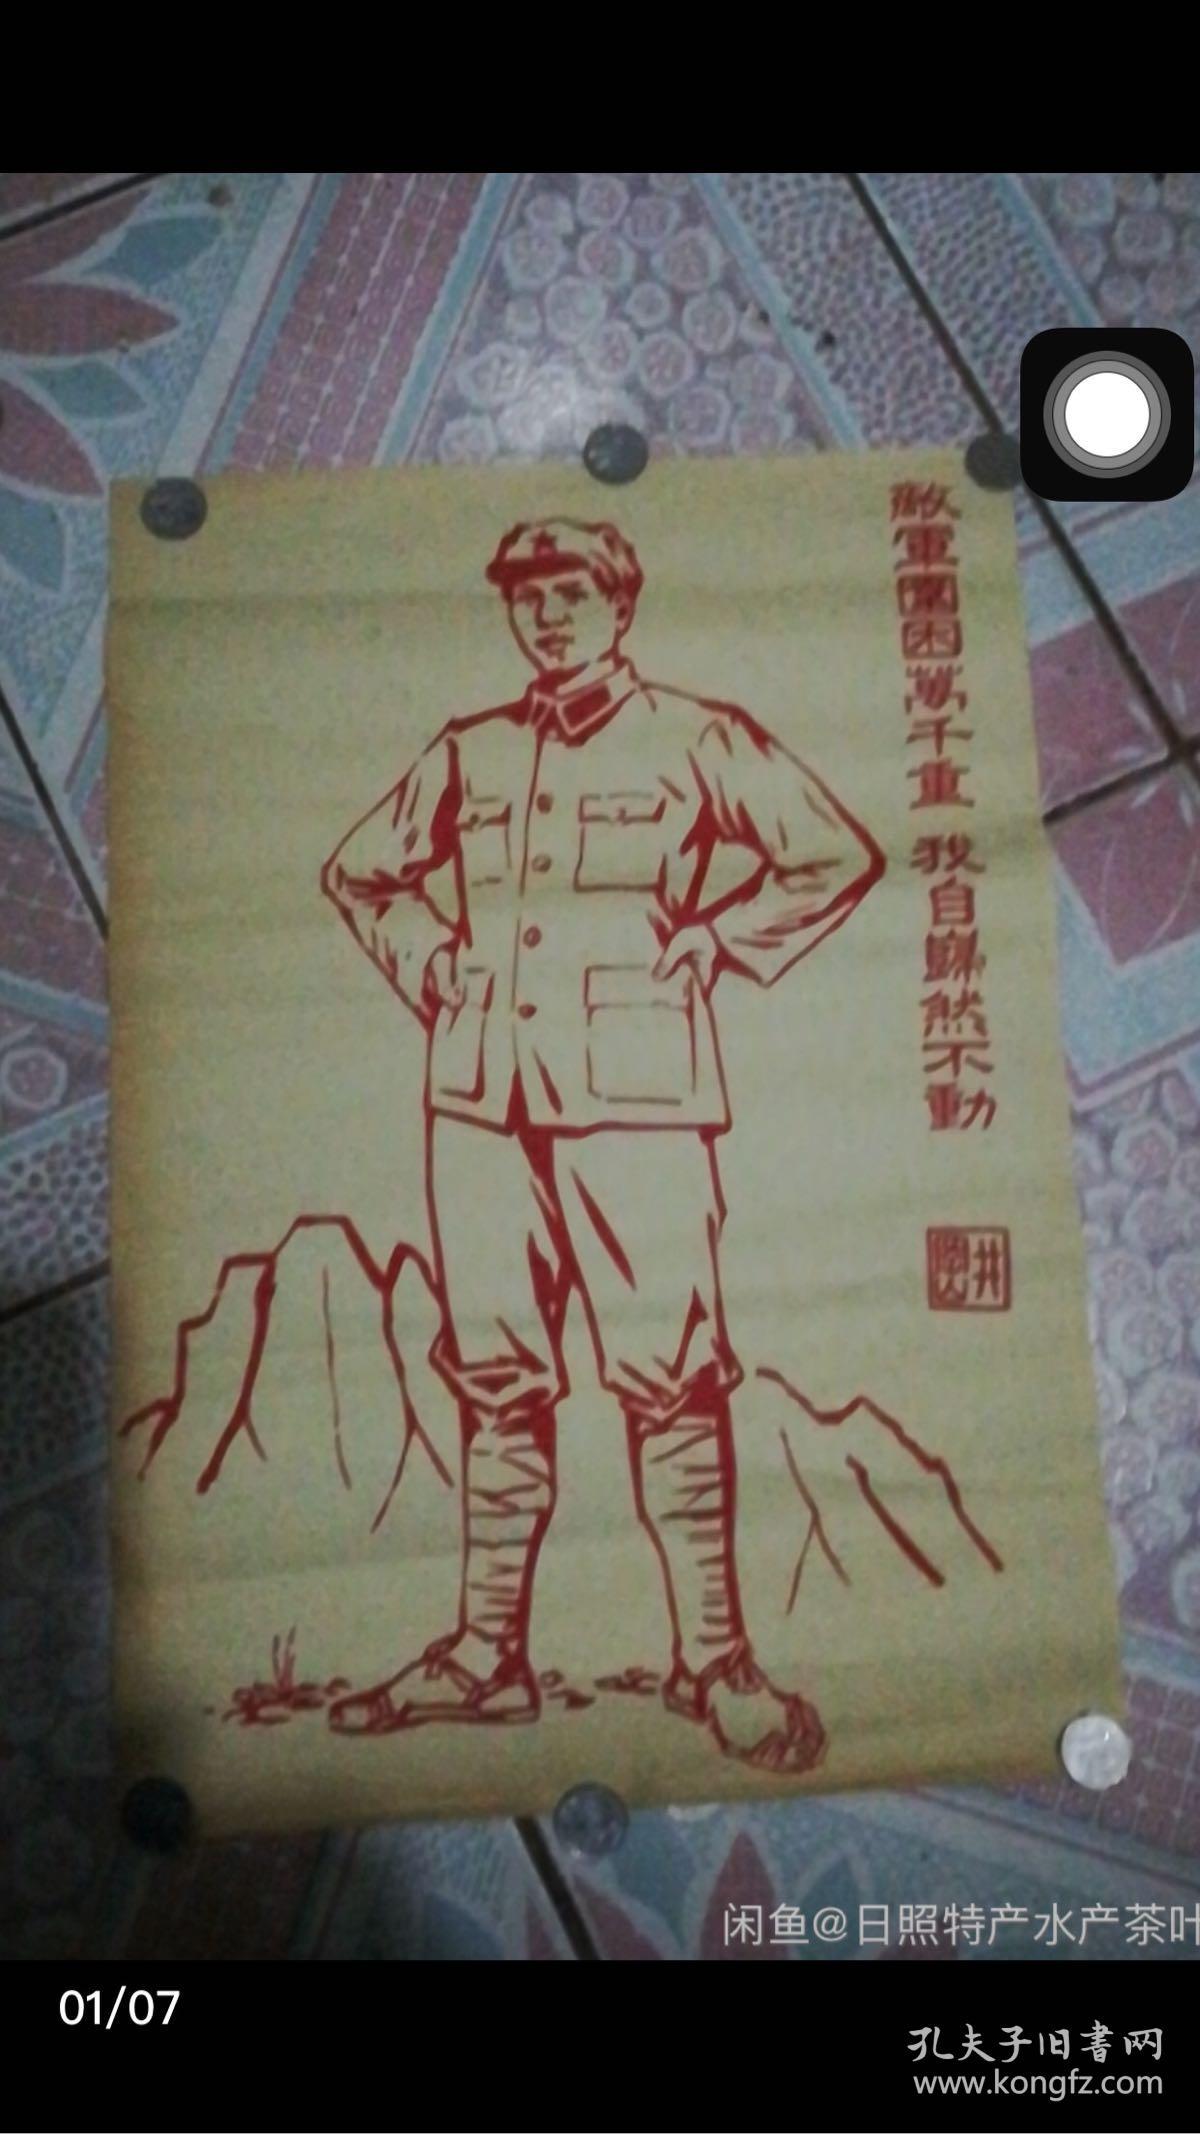 **宣传画 敌军围困万千重 漂亮的毛泽东主席画像老木板画像